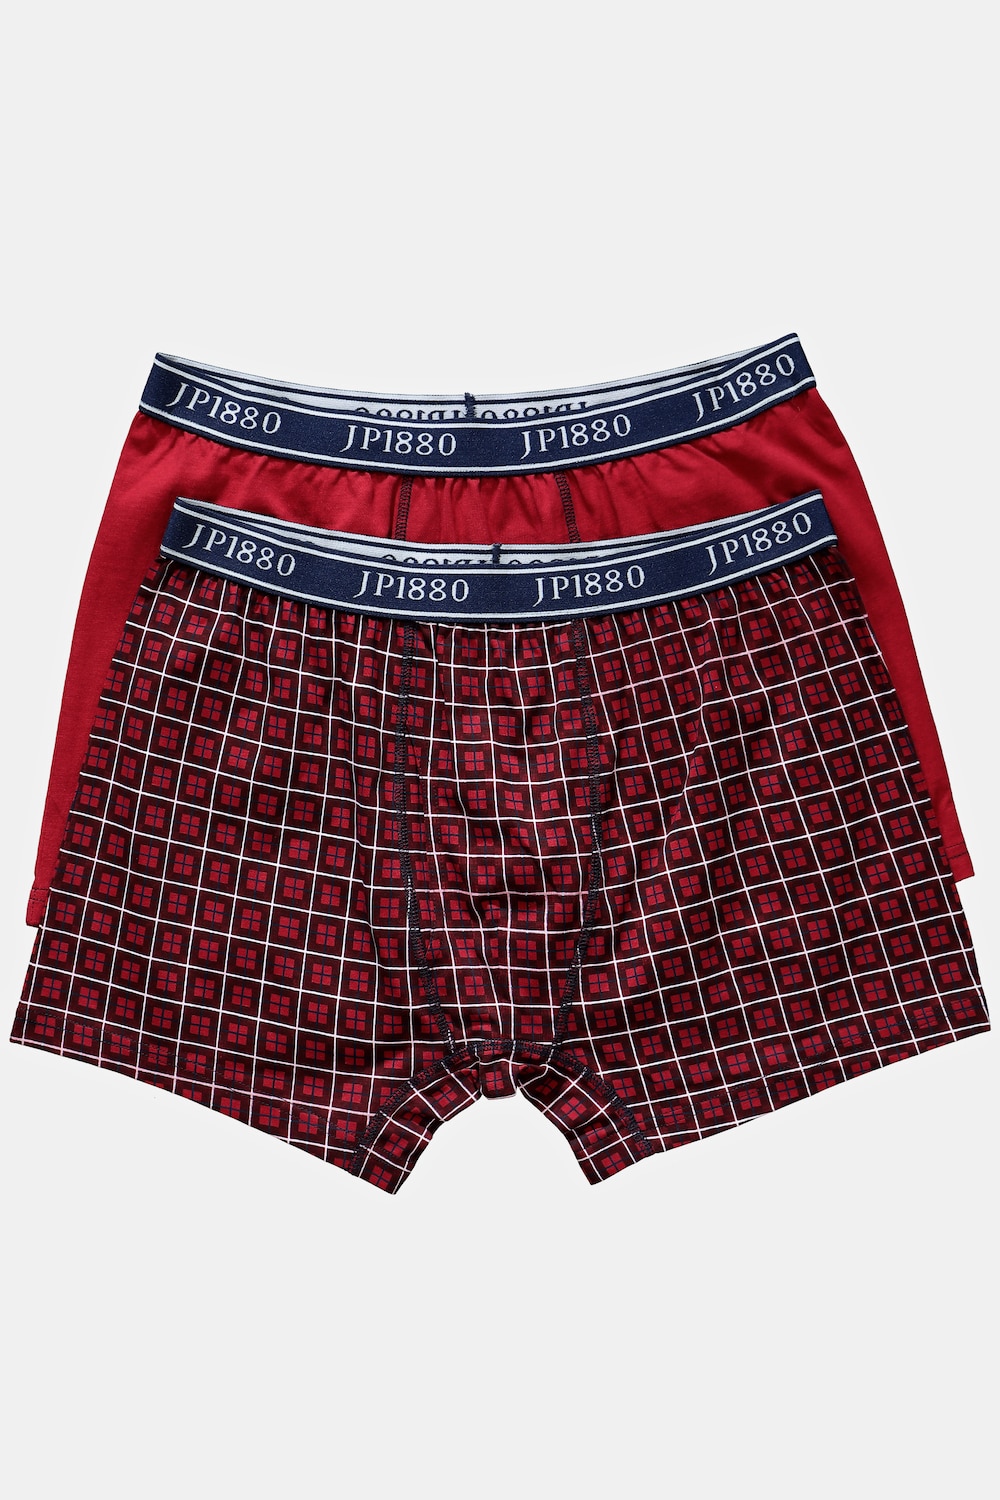 grandes tailles boxers avec technologie flexnamic®, hommes, rouge, taille: 8, coton, jp1880